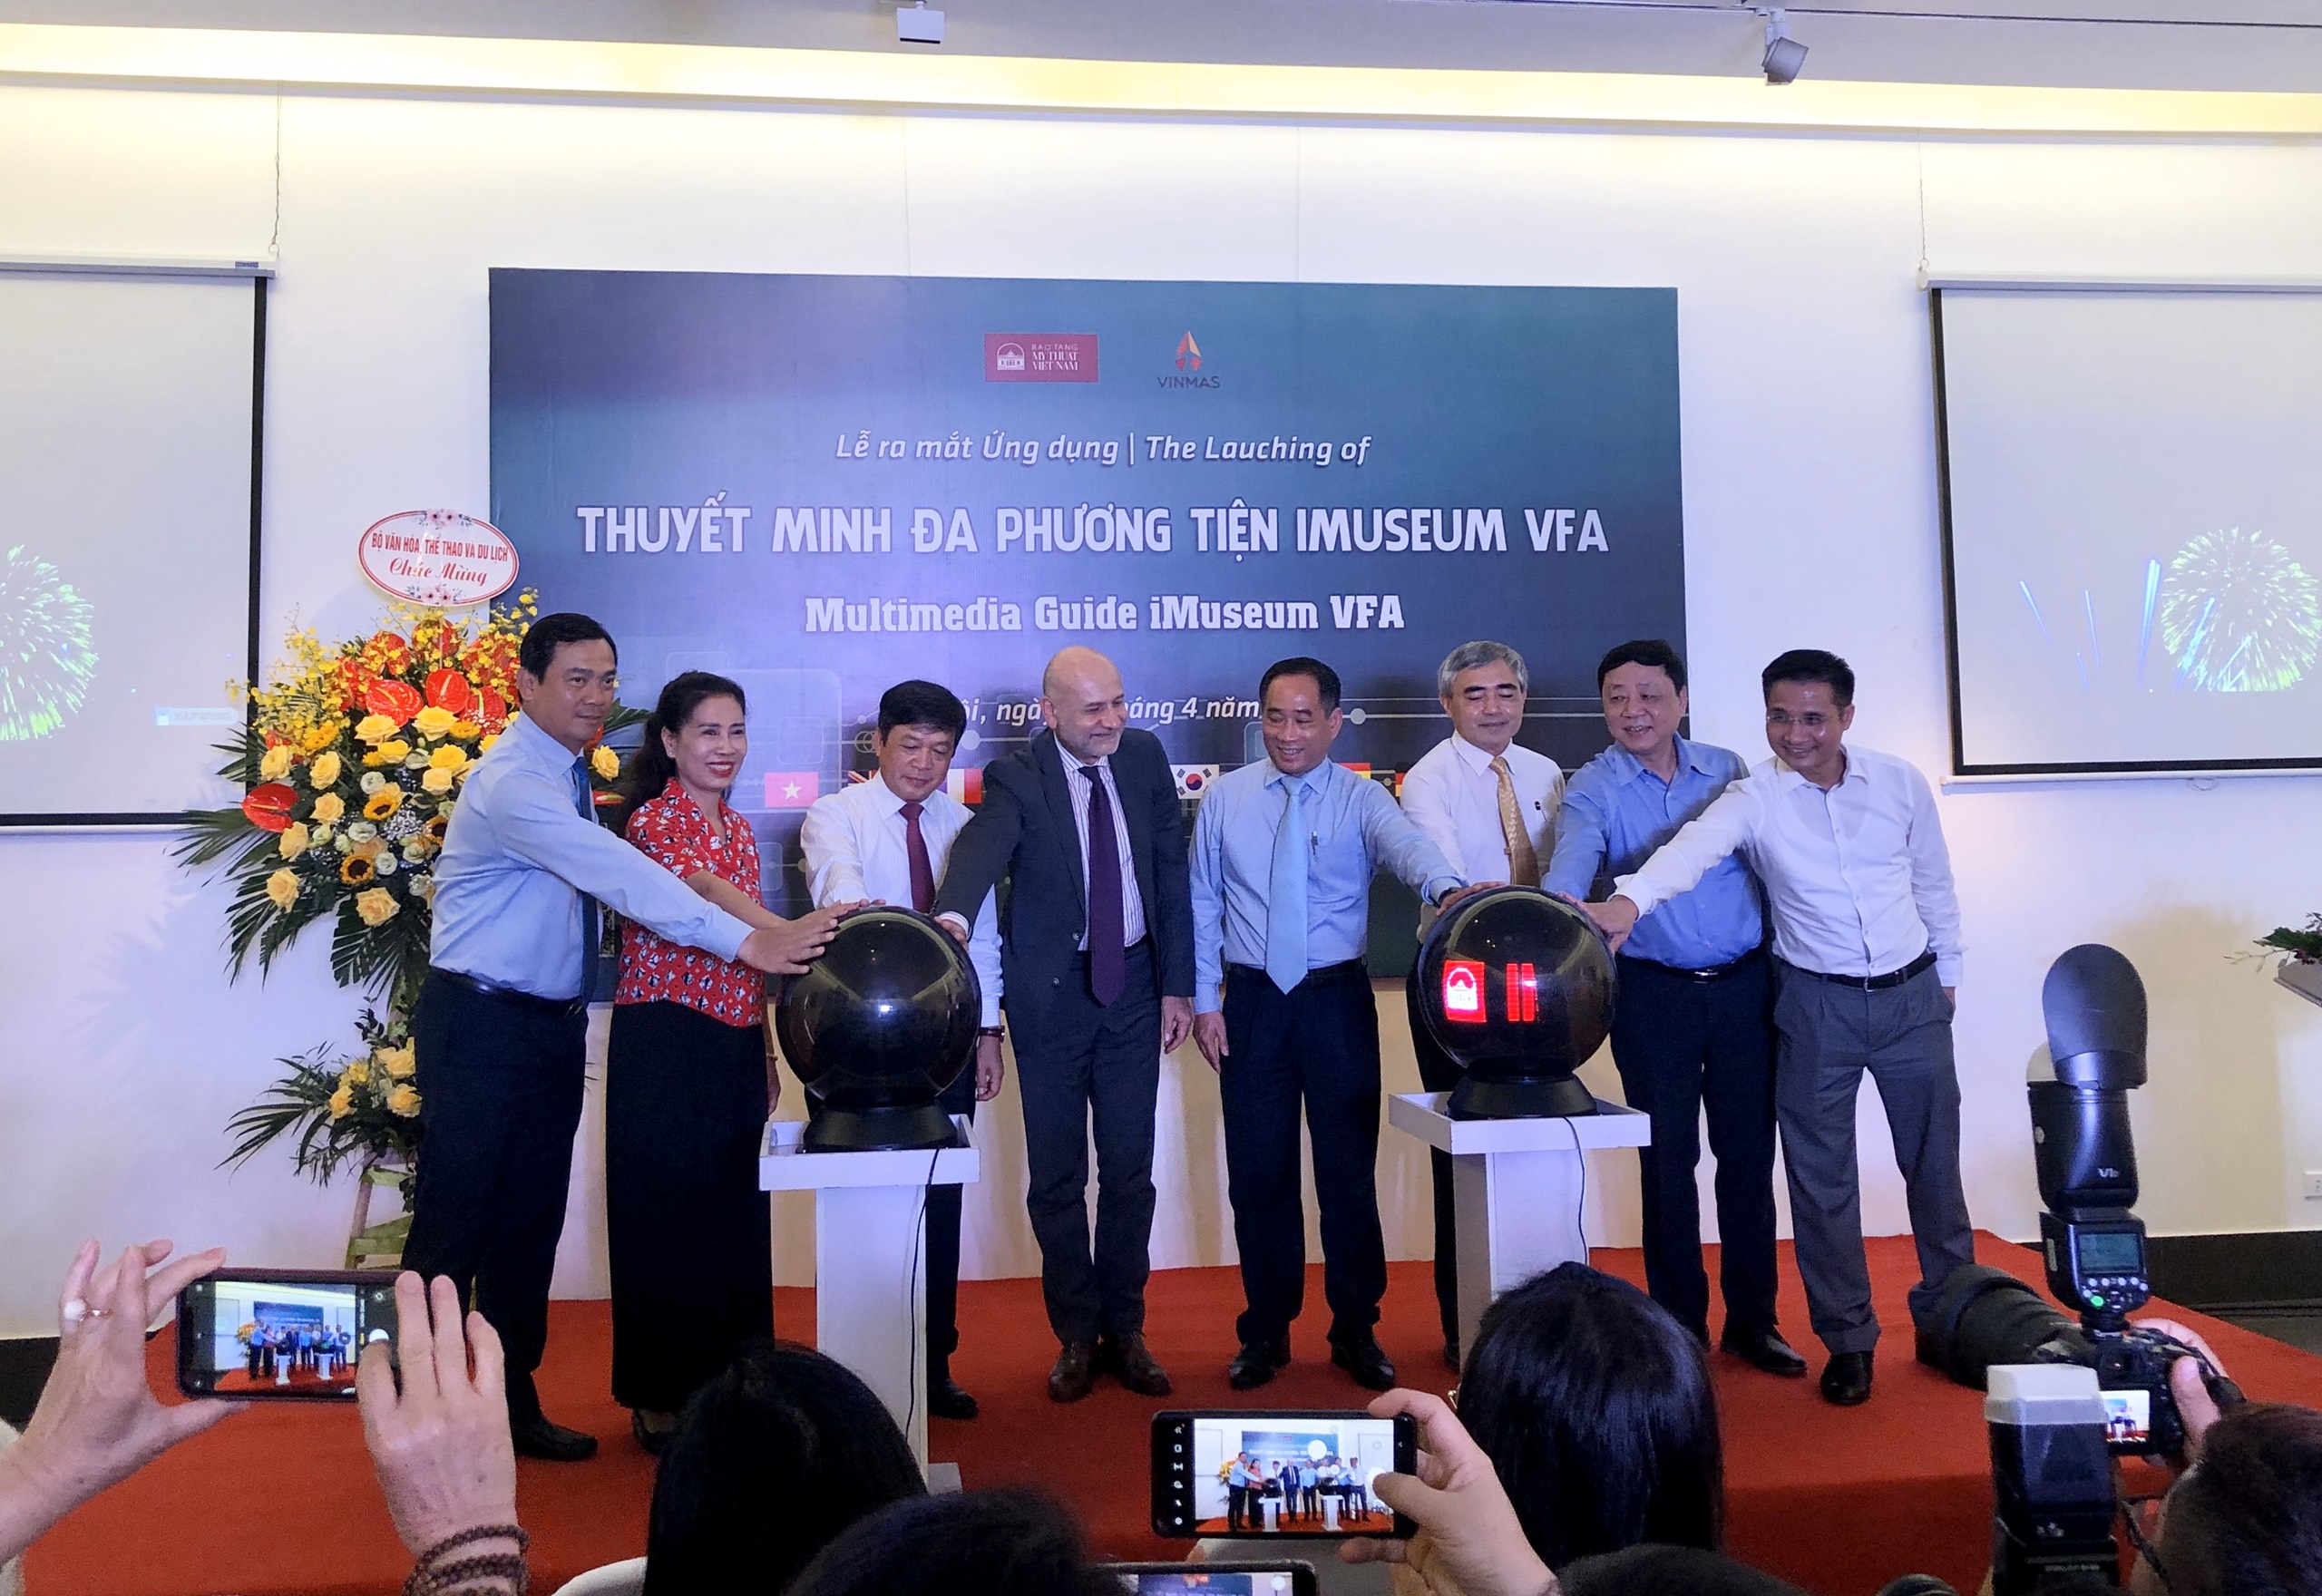 Ứng dụng iMuseum VFA chính thức được ra mắt tại Bảo tàng Mỹ thuật Việt Nam